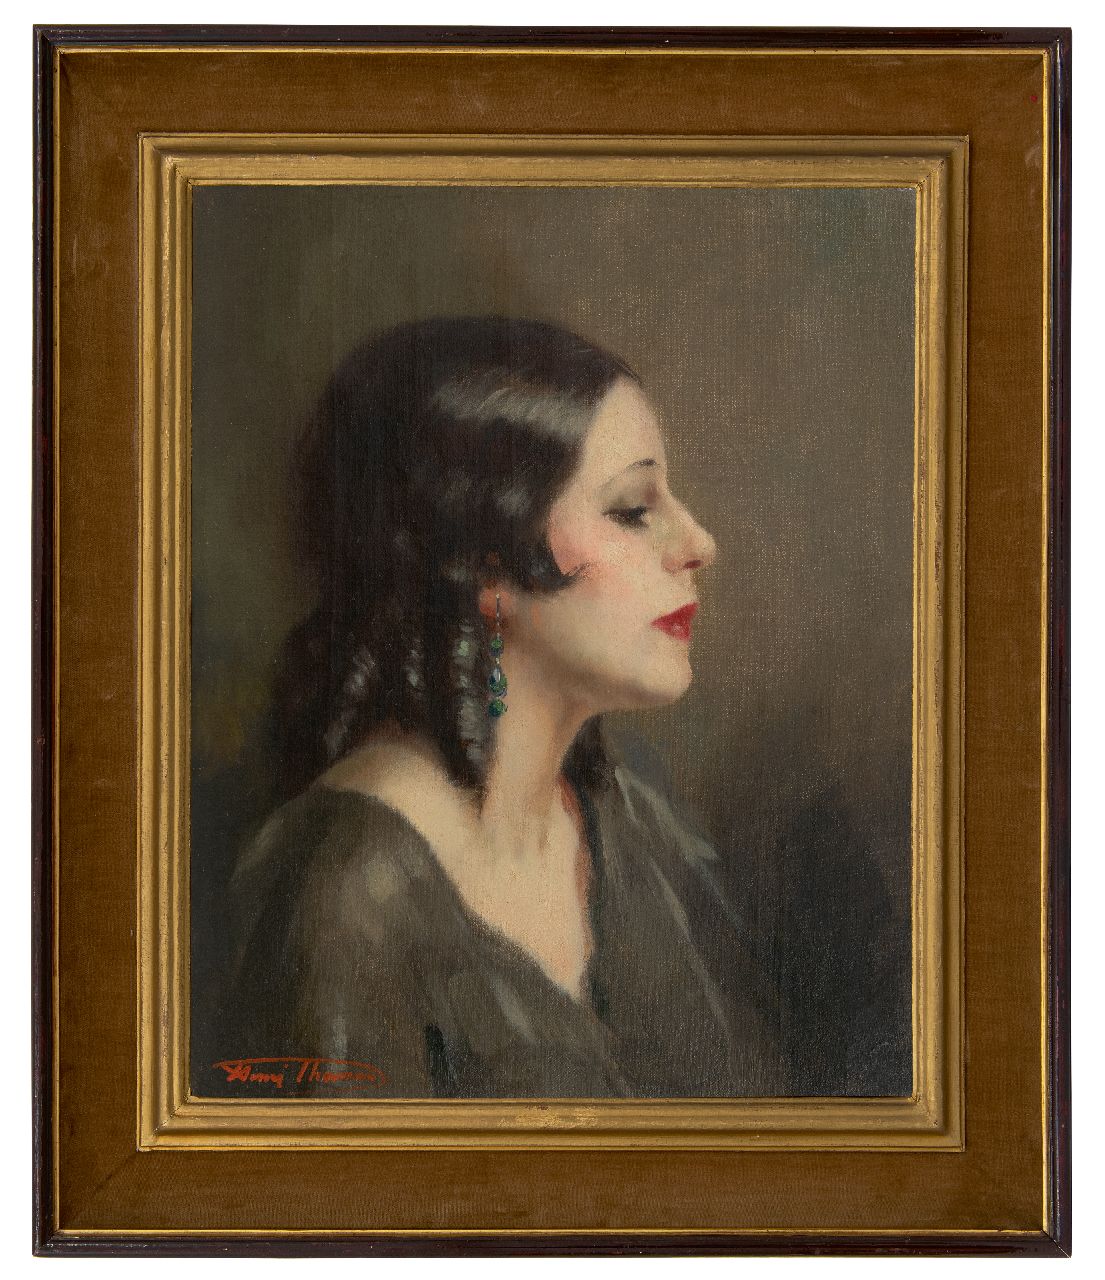 Thomas H.J.  | Henri Joseph Thomas | Schilderijen te koop aangeboden | Portret van een vrouw, en profil, olieverf op doek 50,3 x 40,4 cm, gesigneerd linksonder